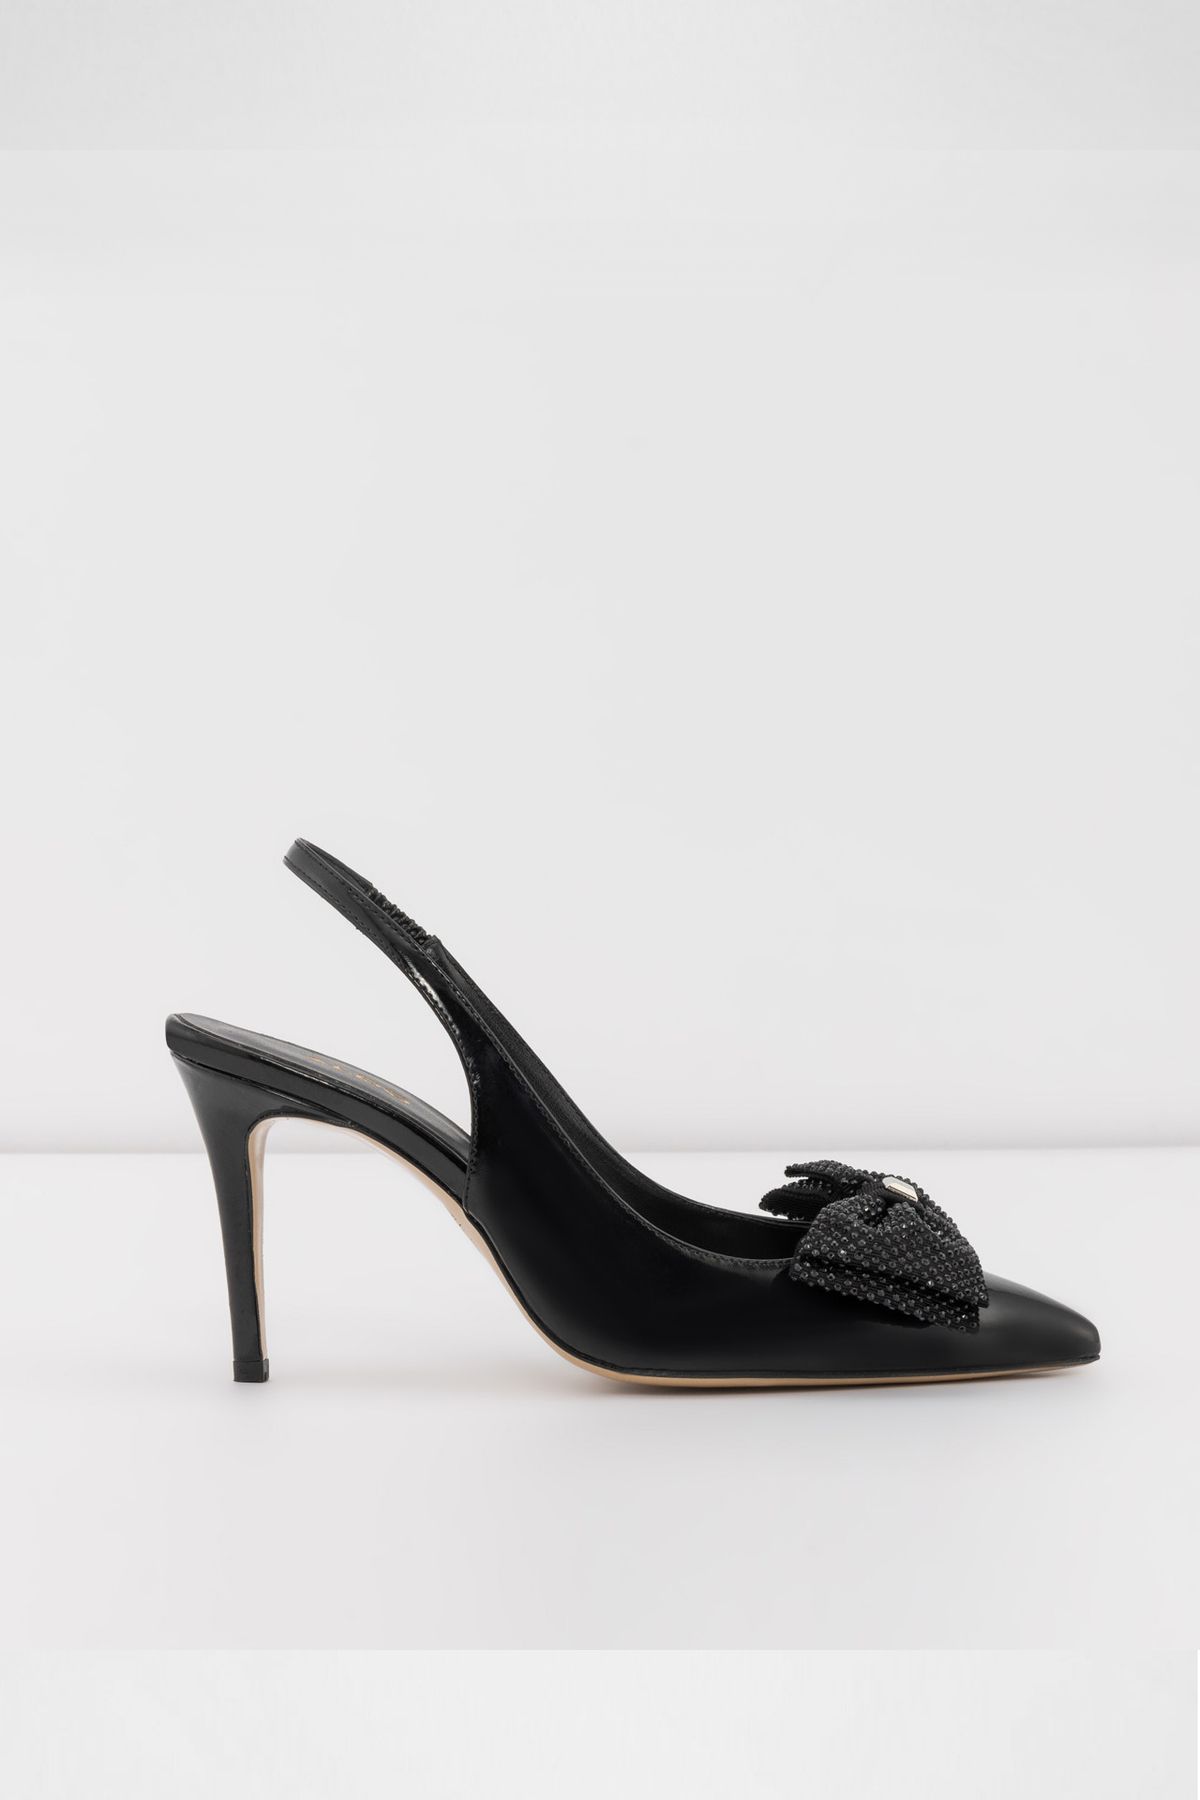 Aldo PANTIN-TR - Siyah Kadın Topuklu Ayakkabı PANTIN-TR-001-002-036